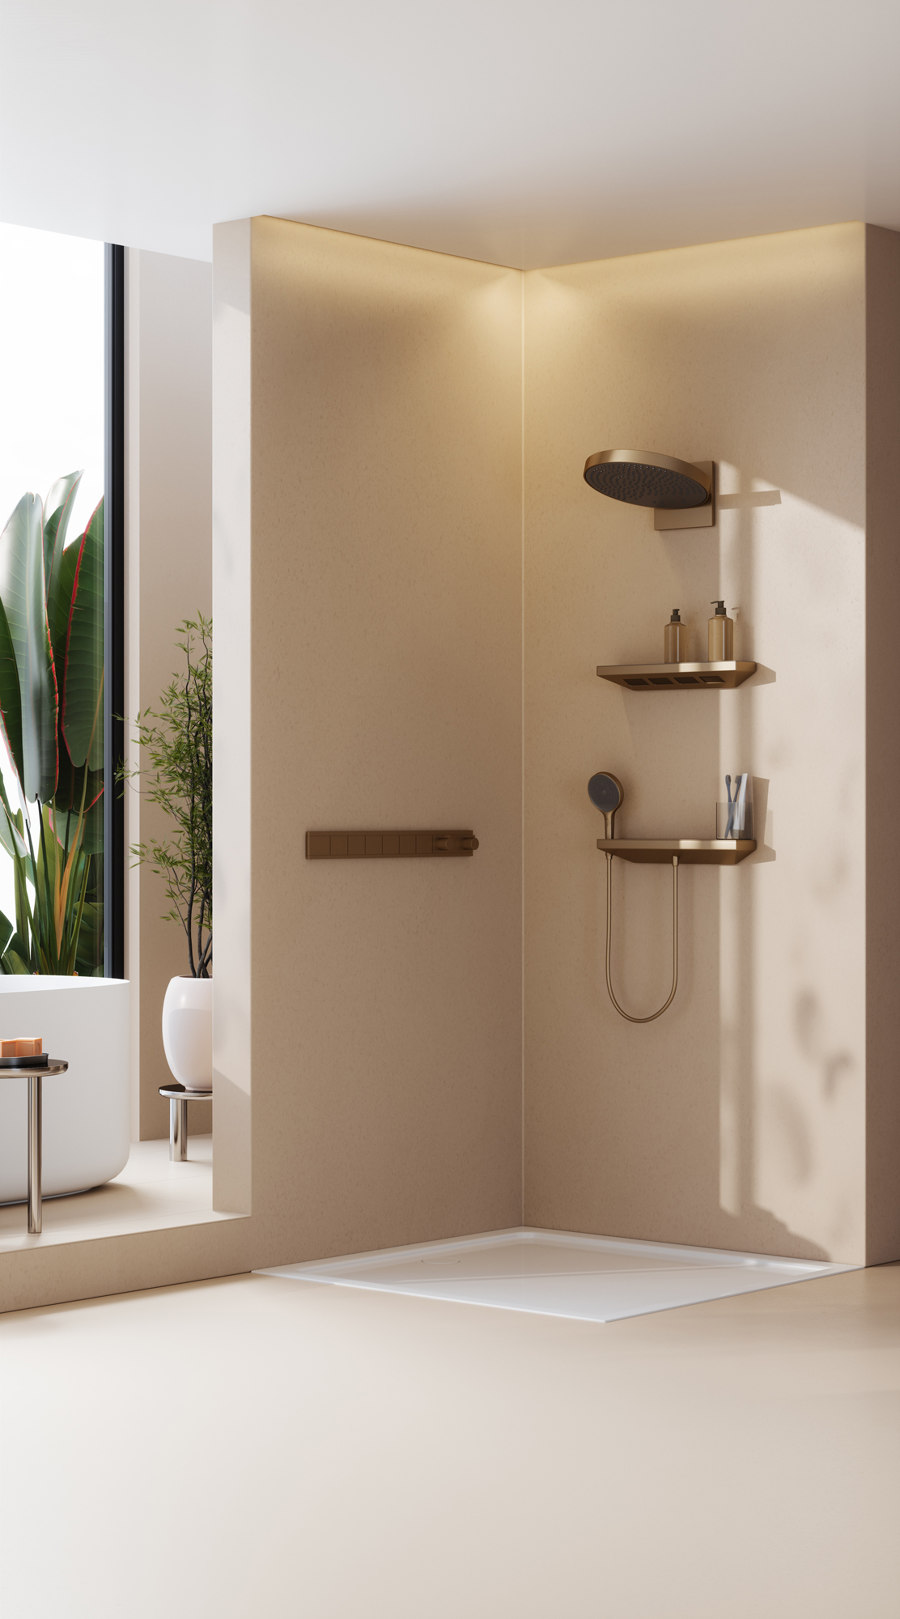 3D Bathroom Design (CGI) Product Images for Bathroom Brand FOR de Danthree Studio | Referencias de fabricantes